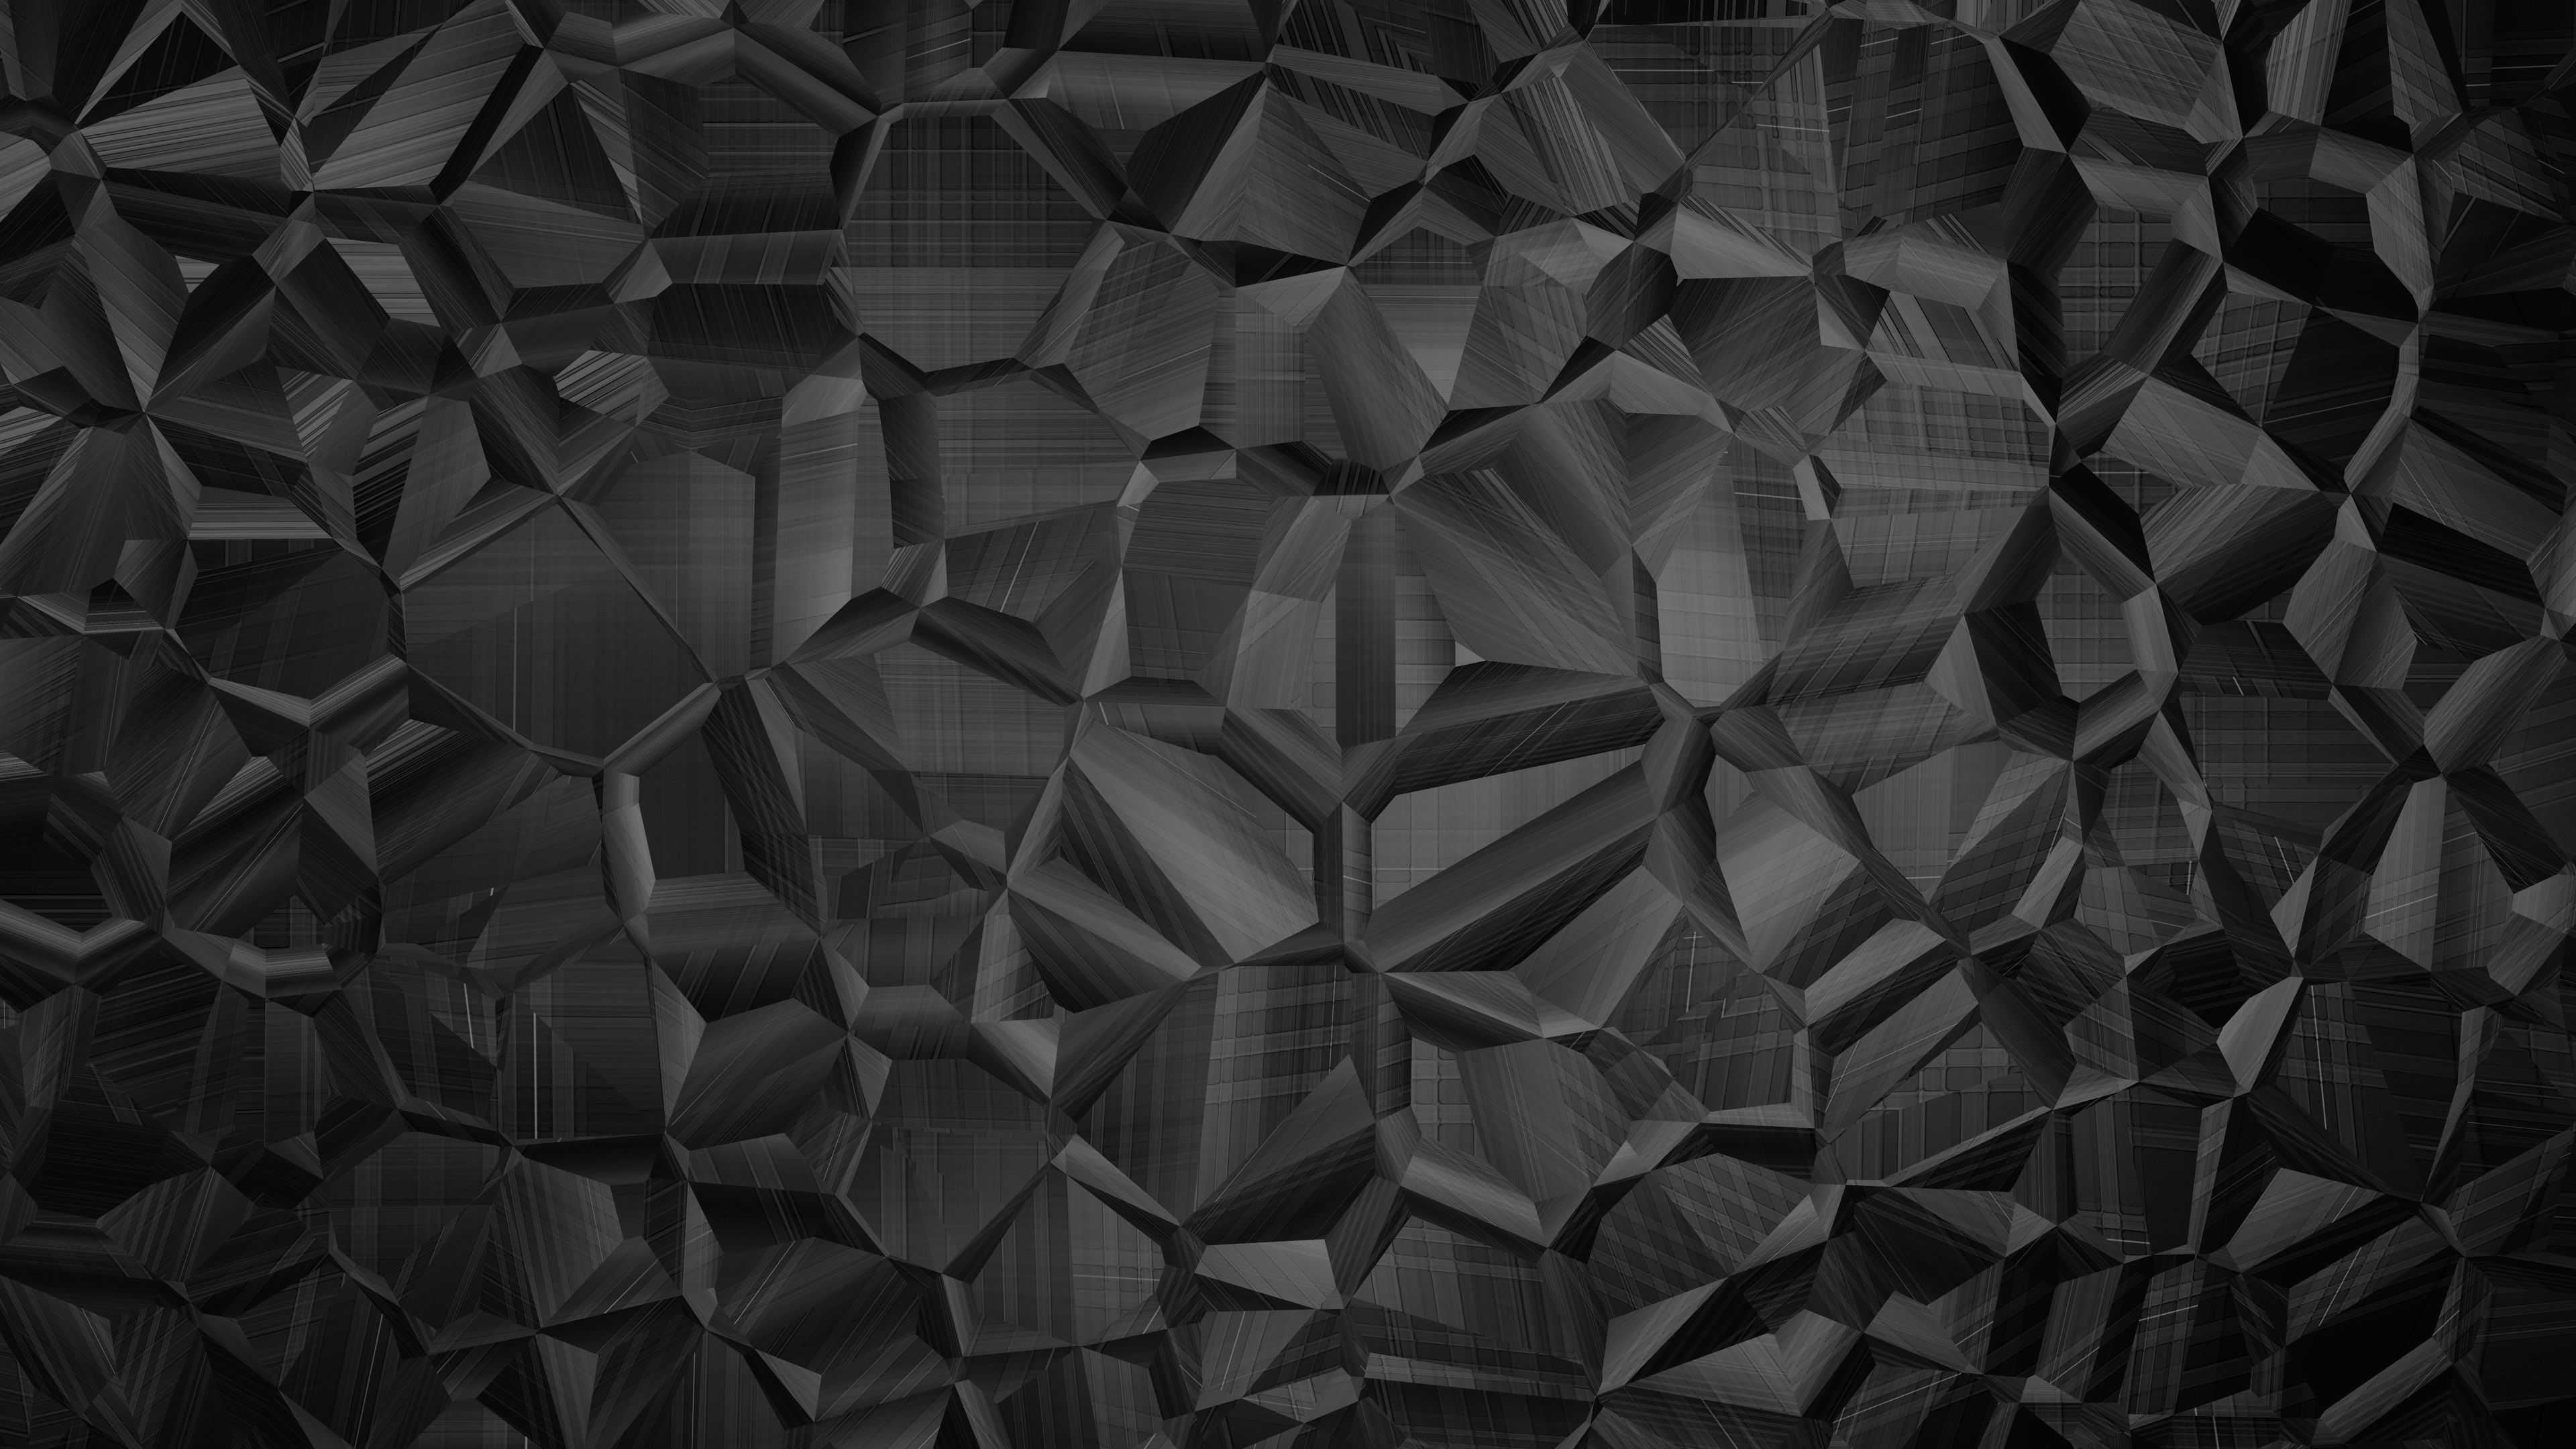 Wallpaper 4k Dark Abstract Shapes 4k 4k Wallpaper, Abstract Wallpaper, Black Wallpaper, Dark Wallpaper, Hd Wallpaper, Shapes Wallpaper